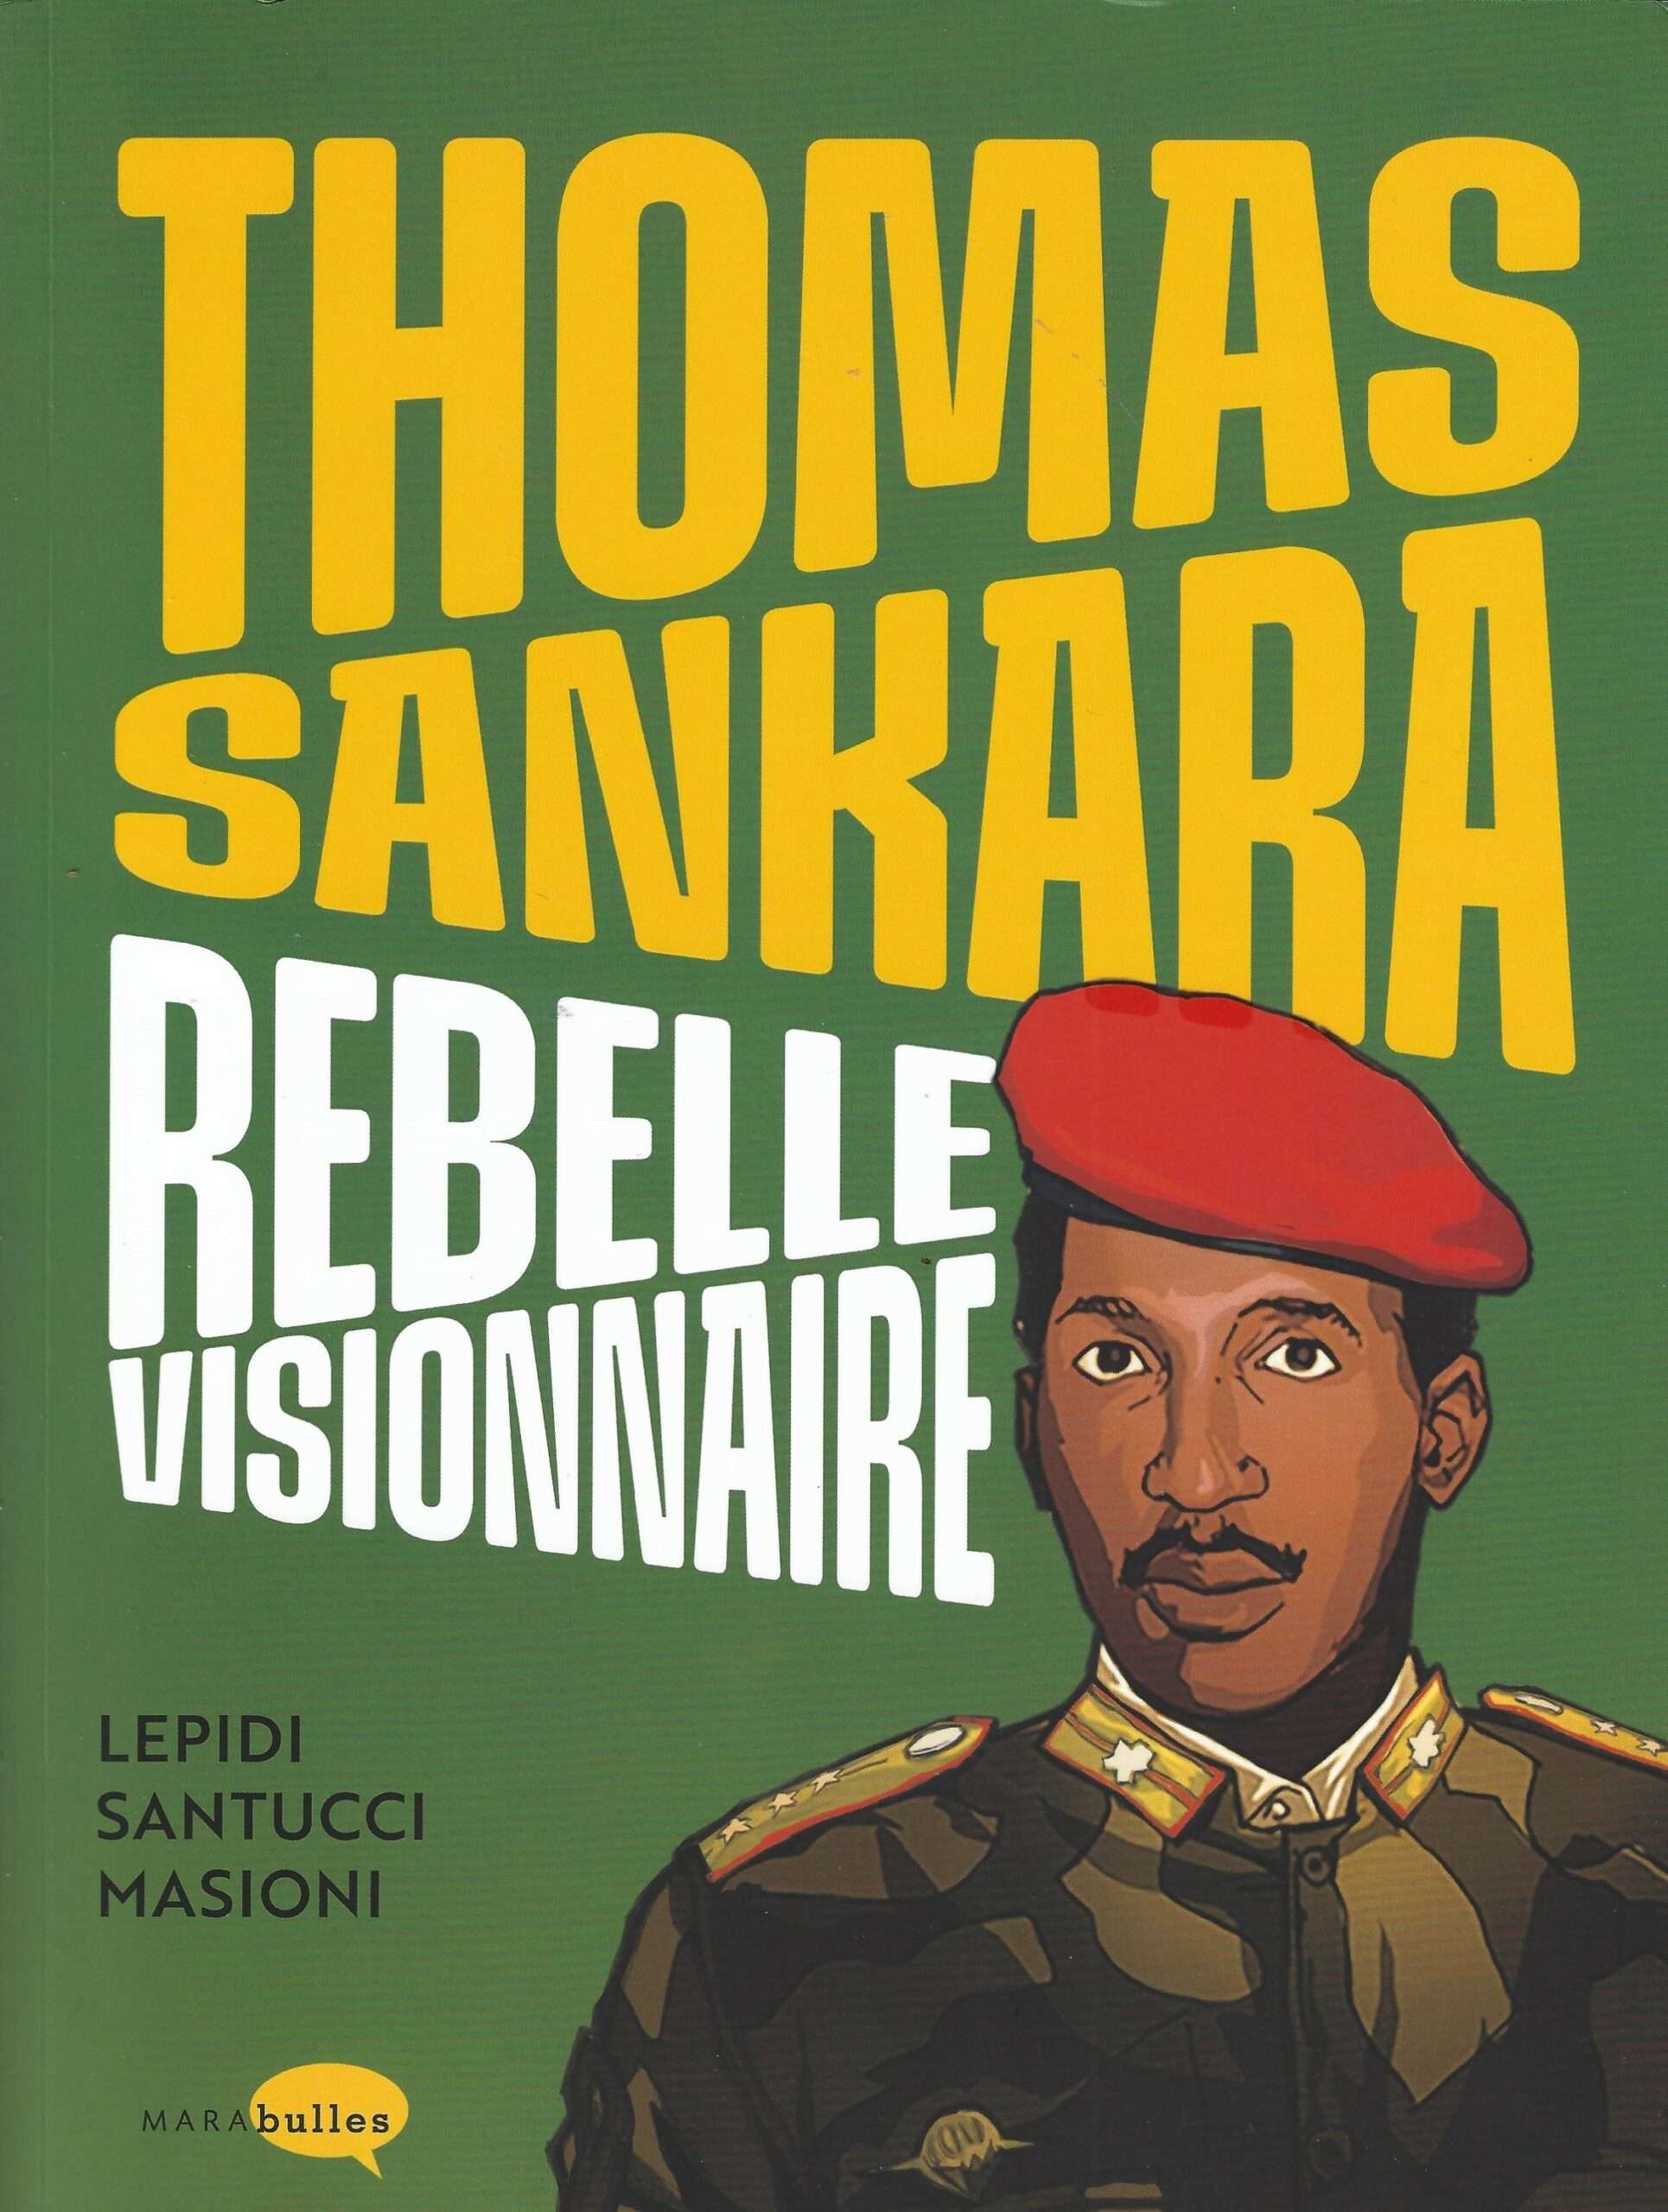 thomas Sankara  maabulles 27 09